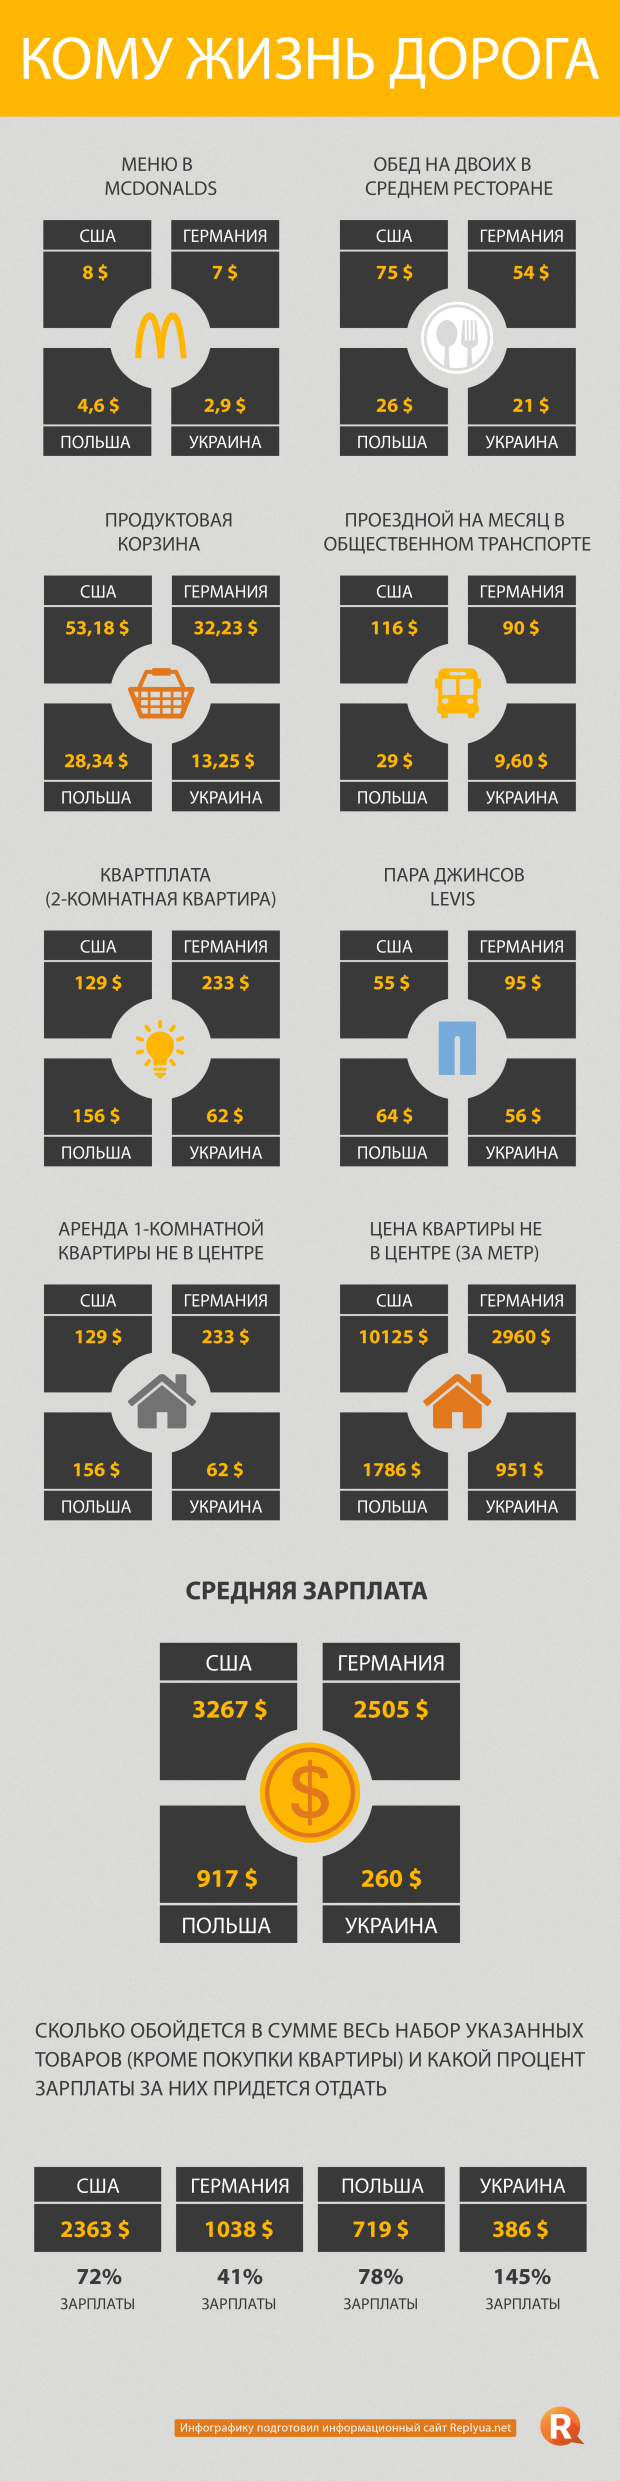 Где жизнь лучше в США, Европе или Украине? - инфографика 